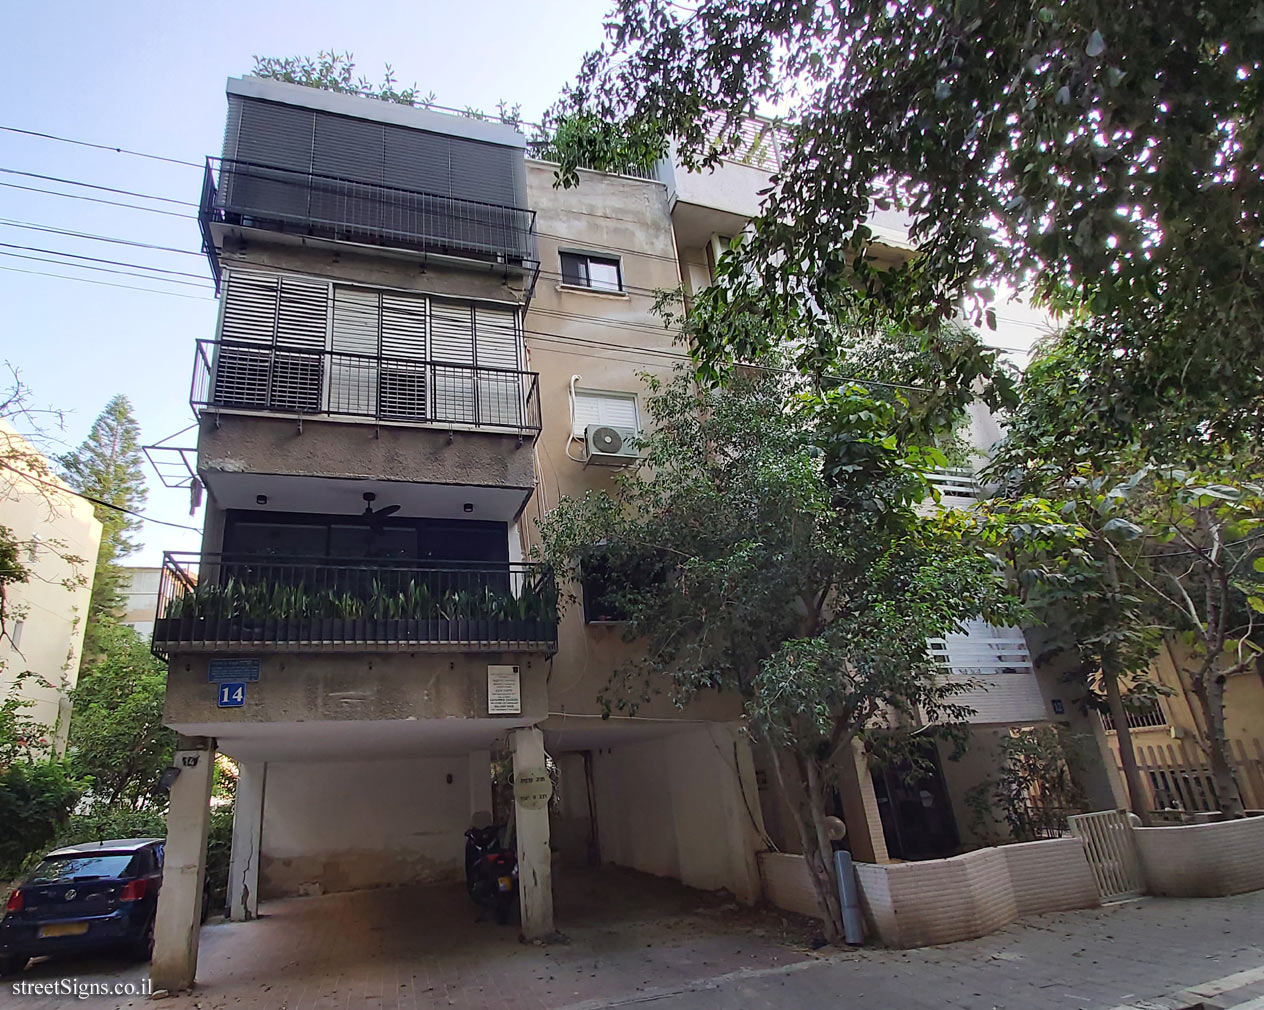 The house of Zaharira Charifai & Shlomo Shva - Zeharya St 14, Tel Aviv-Yafo, Israel